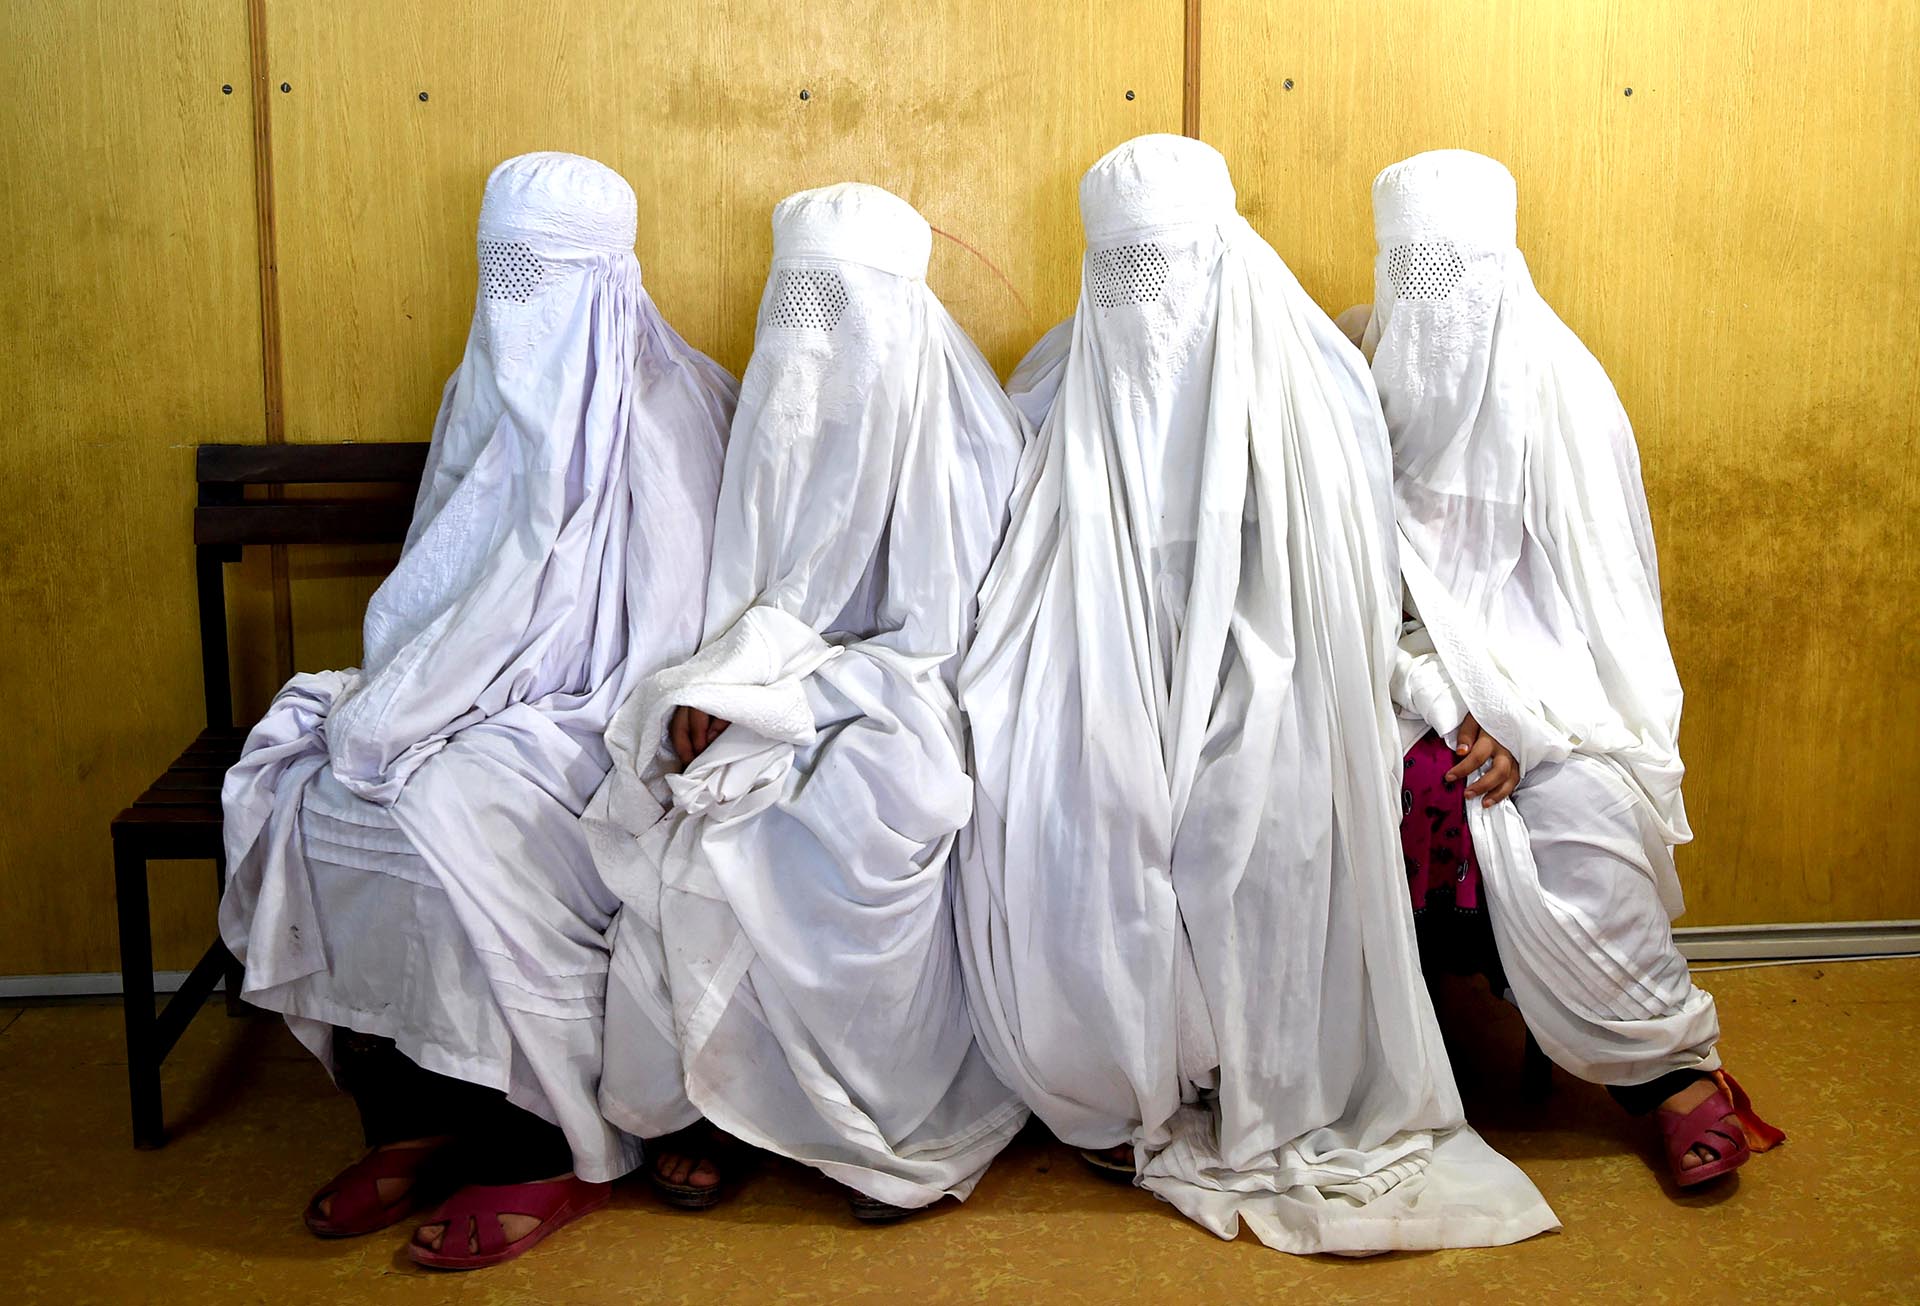 El hiyab suele ser un pañuelo que cubre la cabeza, el burka es una túnica que lo envuelve todo, mientras que la abaya es una túnica que deja el rostro descubierto (AFP PHOTO / ABDUL MAJEED)